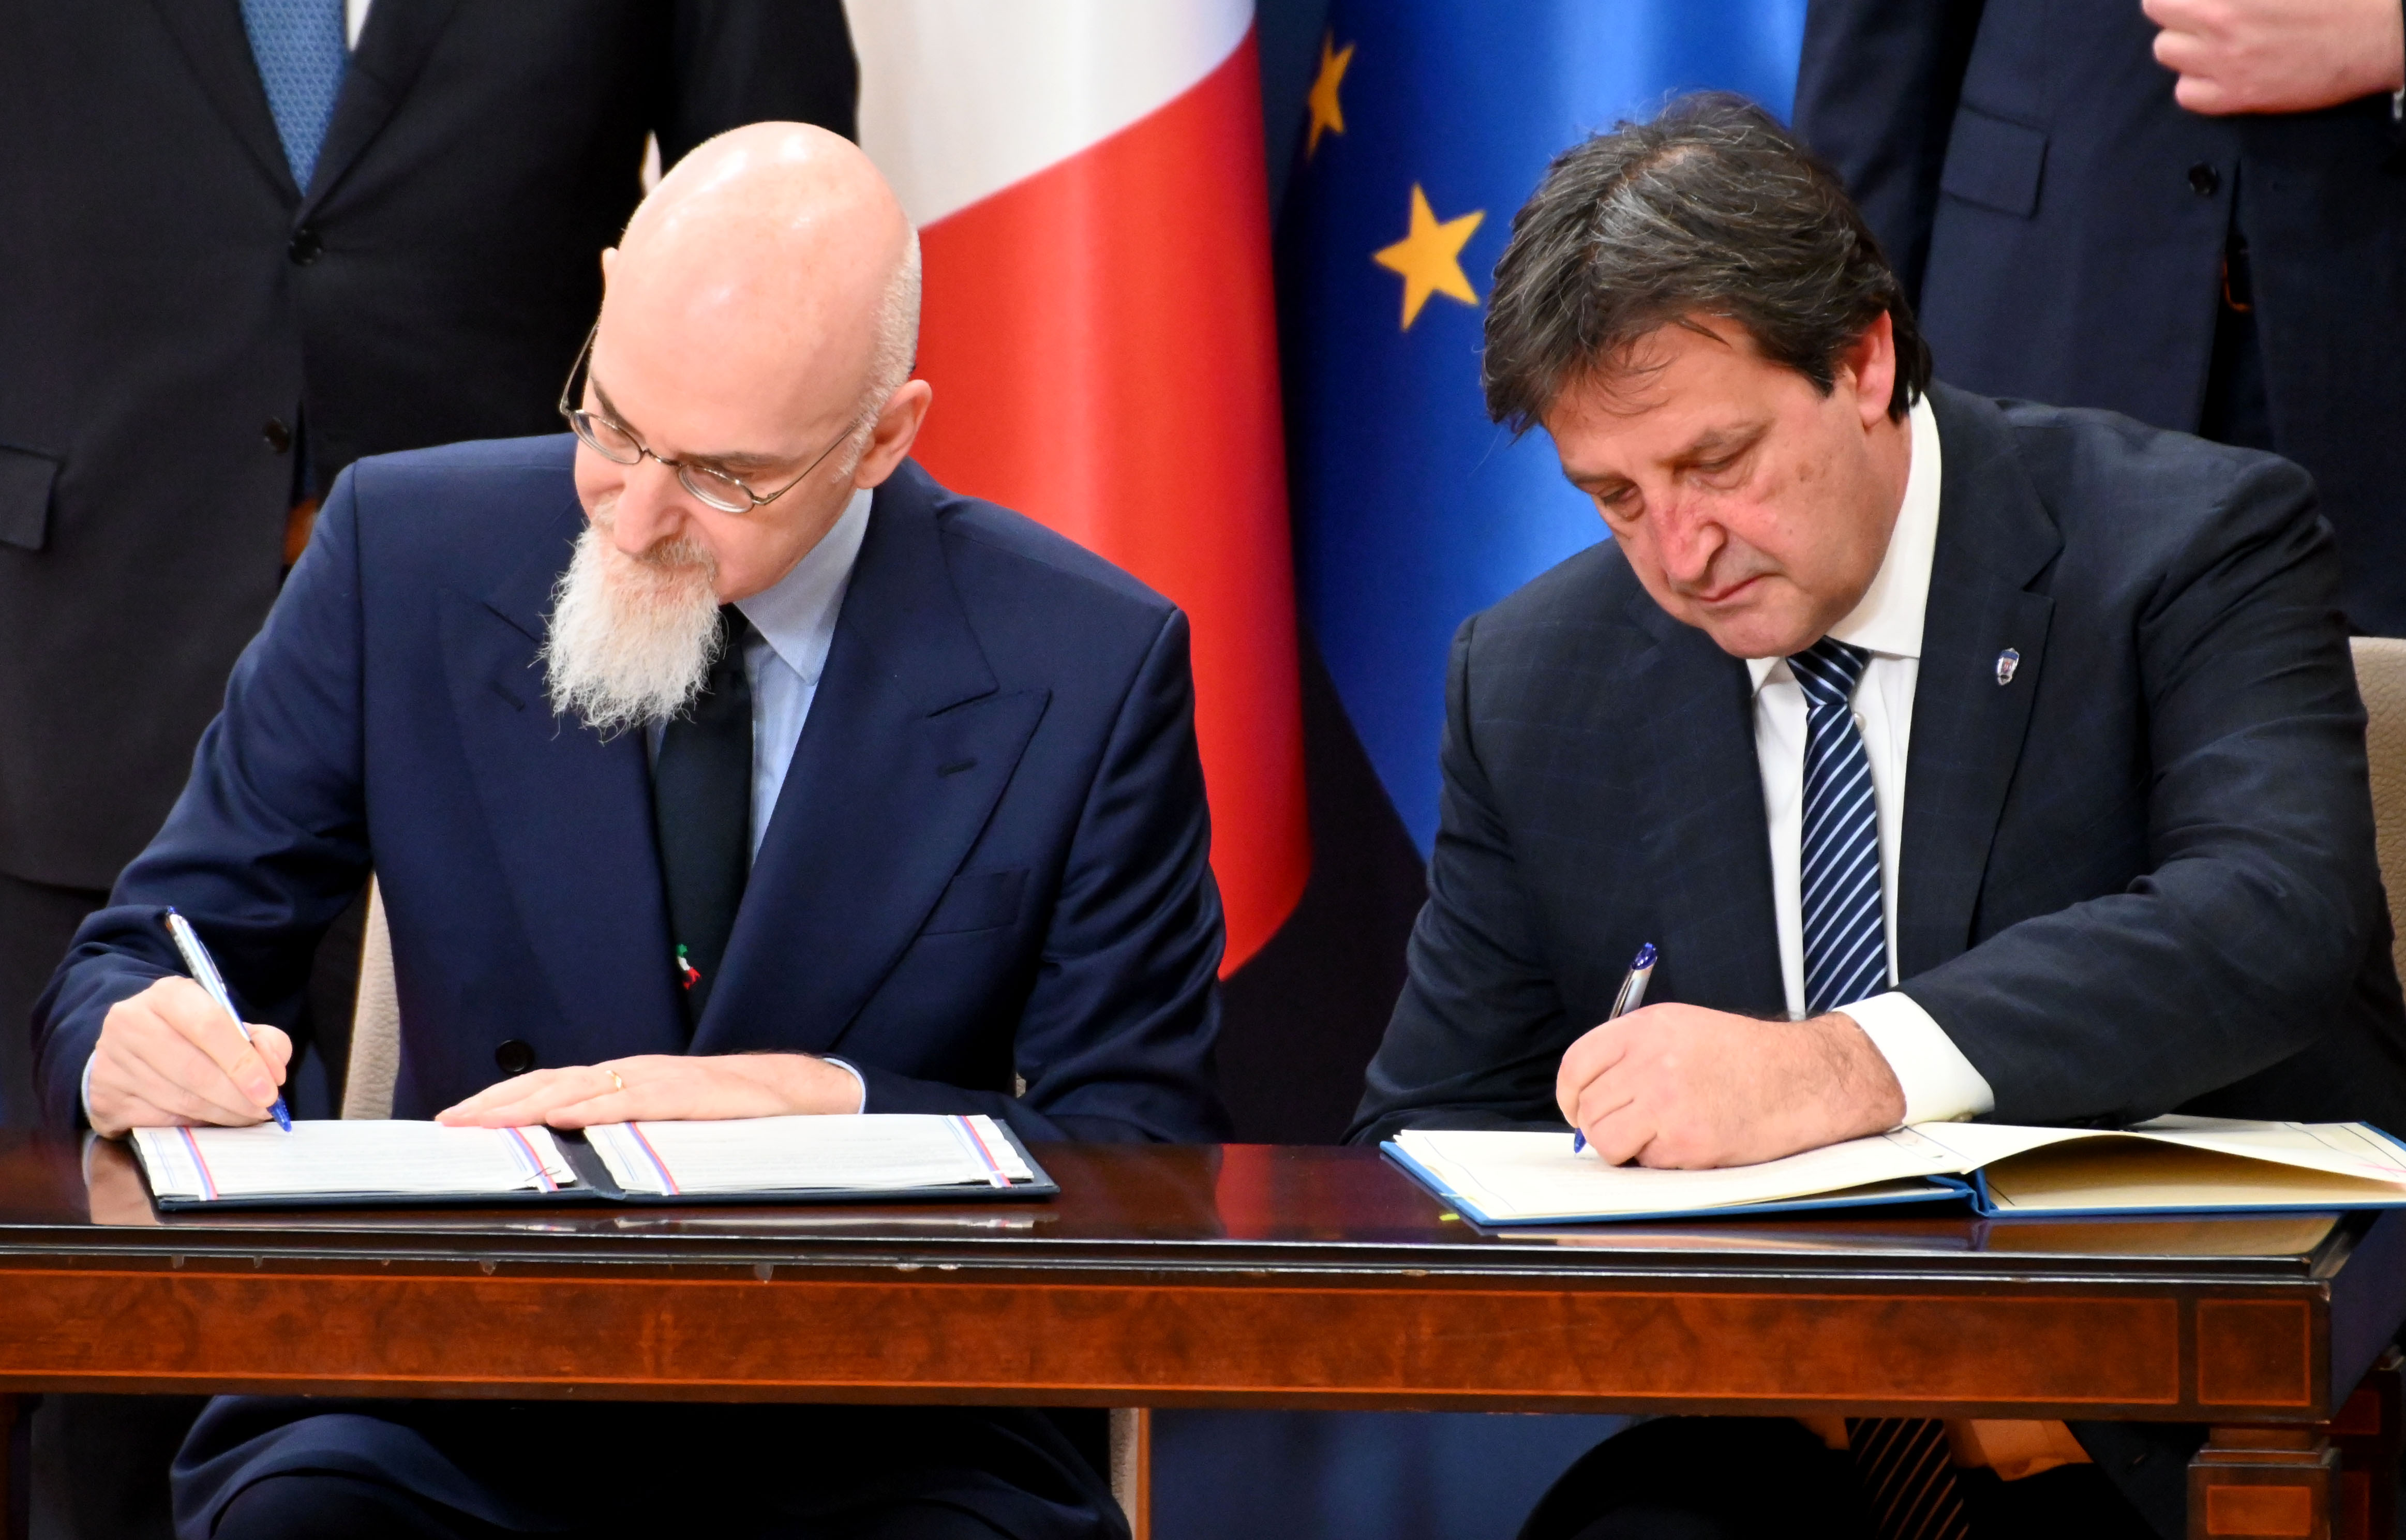 Potpisan Sporazum o uzajamnom priznavanju i zameni vozačkih dozvola između Vlade Republike Srbije i Vlade Republike Italije